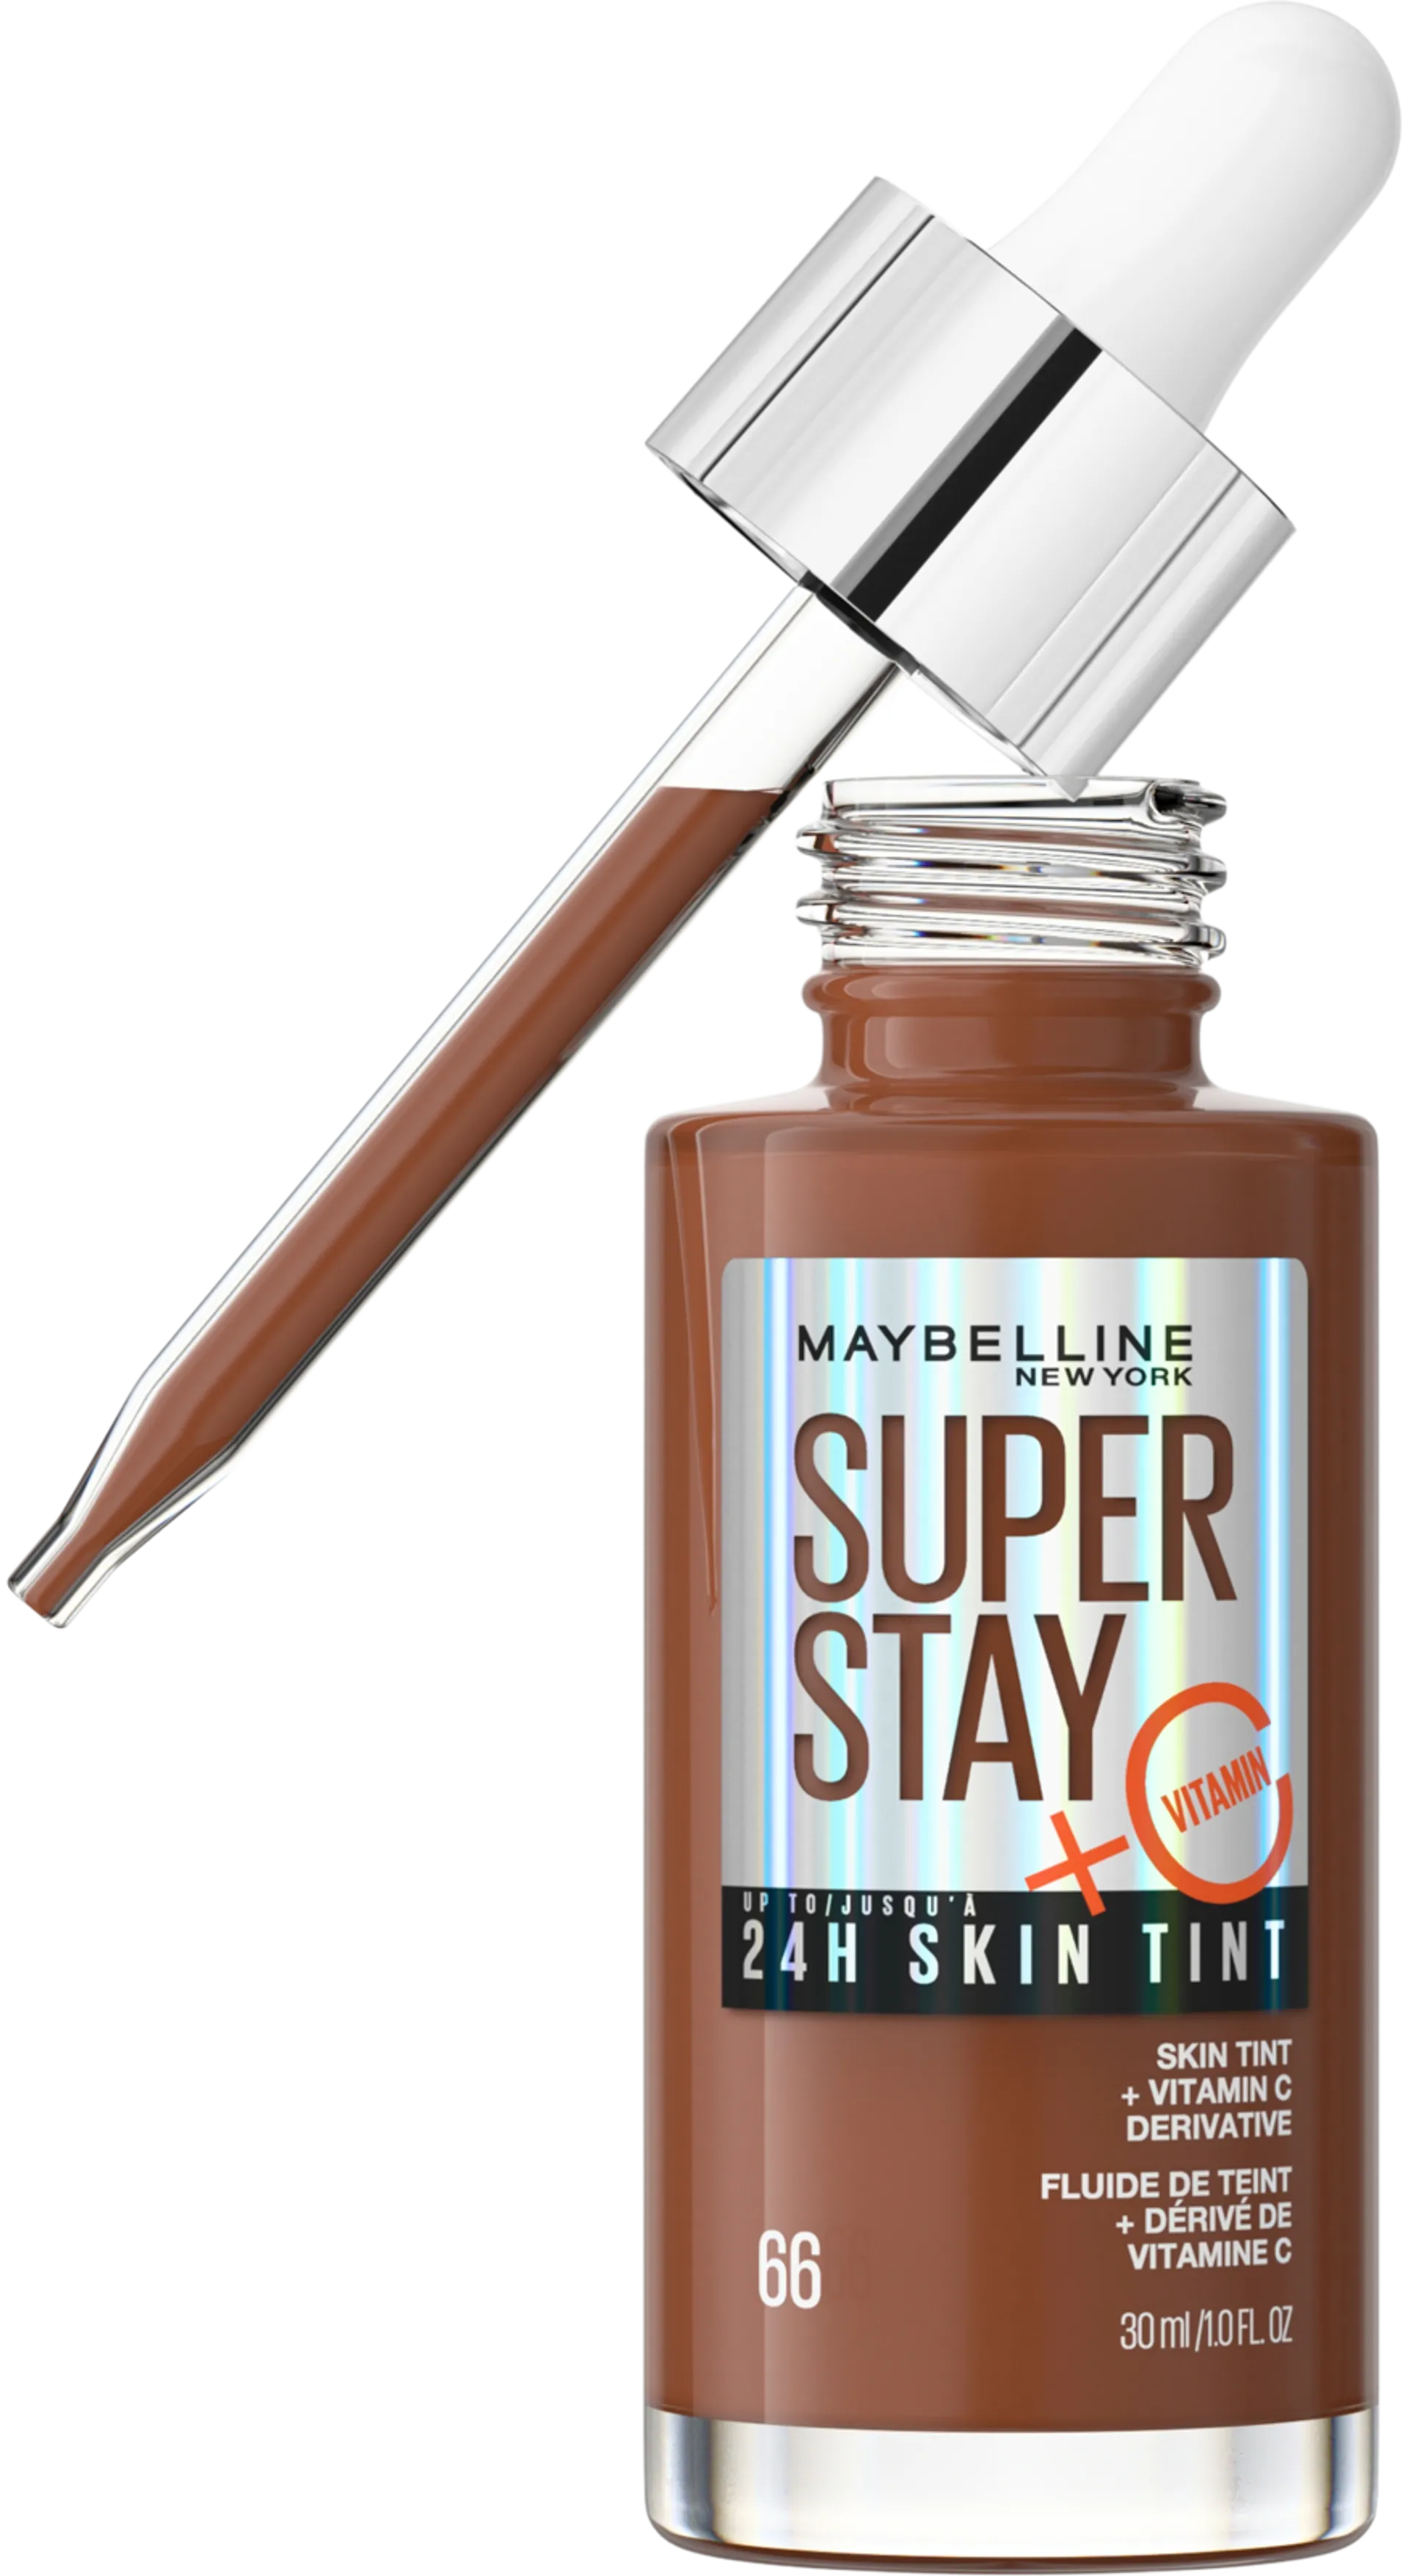 Maybelline New York Superstay 24H Skin Tint 66 meikkivoide 30ml - 66 - 1